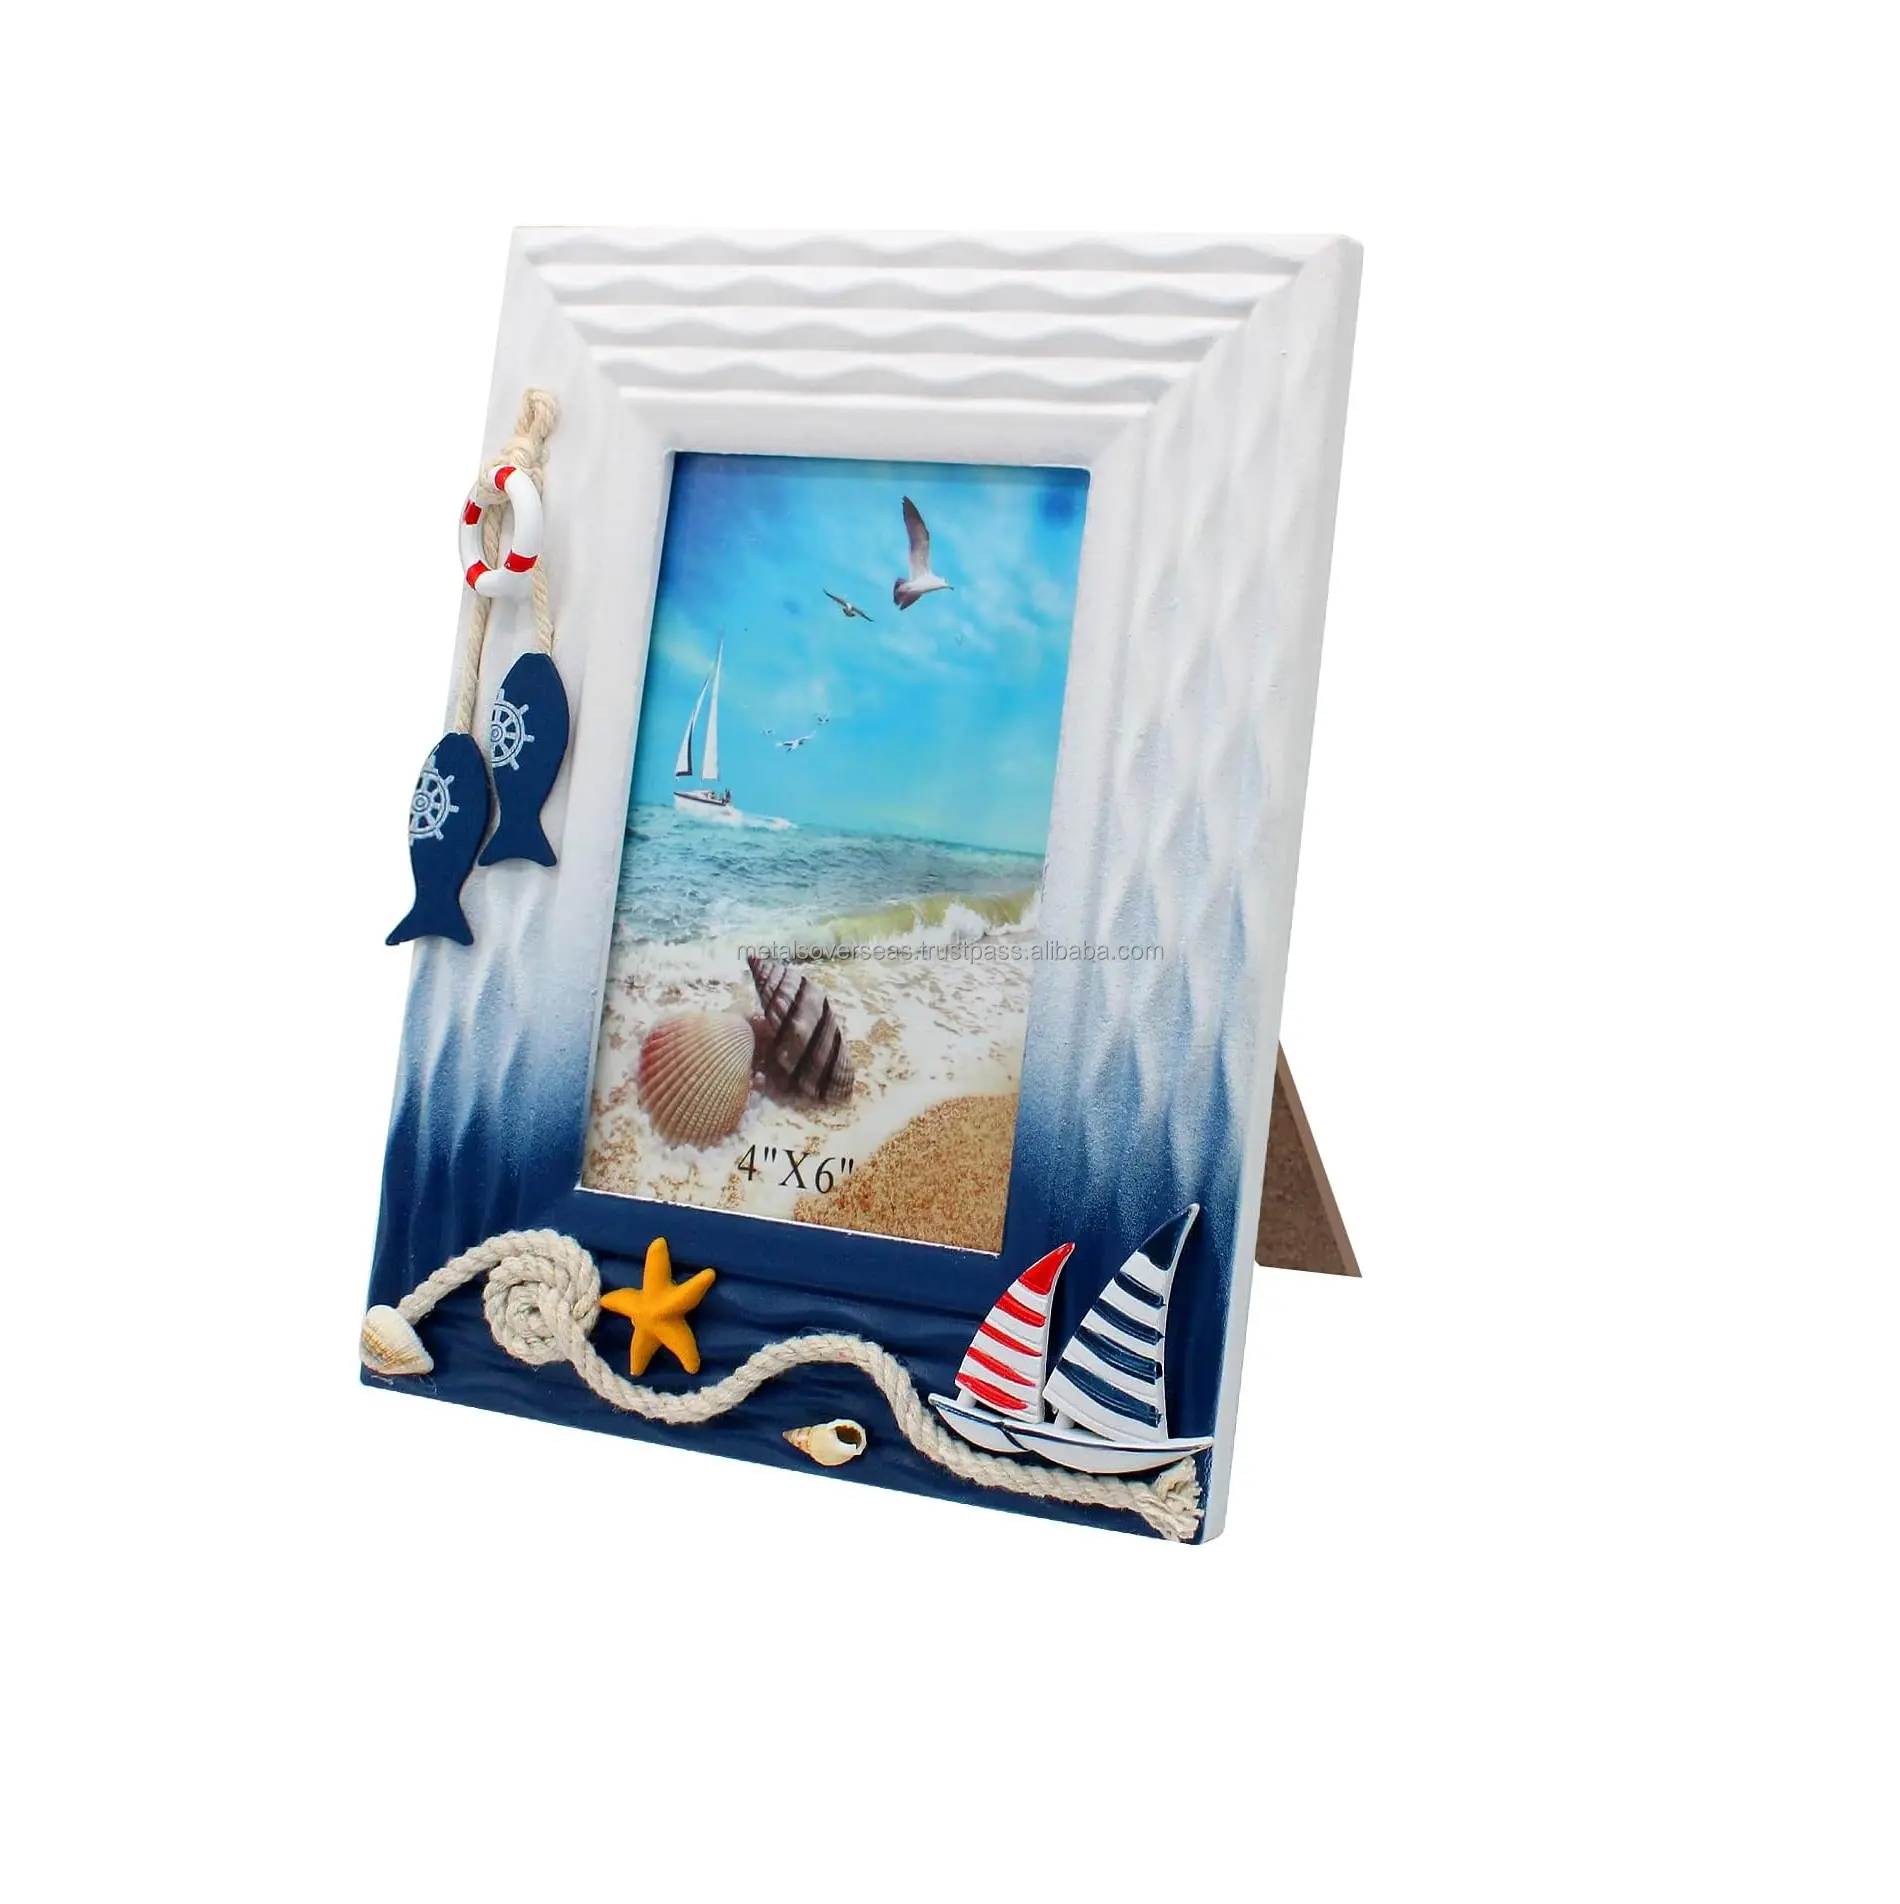 Cornice nautica tema oceano cornici per foto in legno spiaggia foto Stand per Home Coffee Shop tavolo o camera per bambini